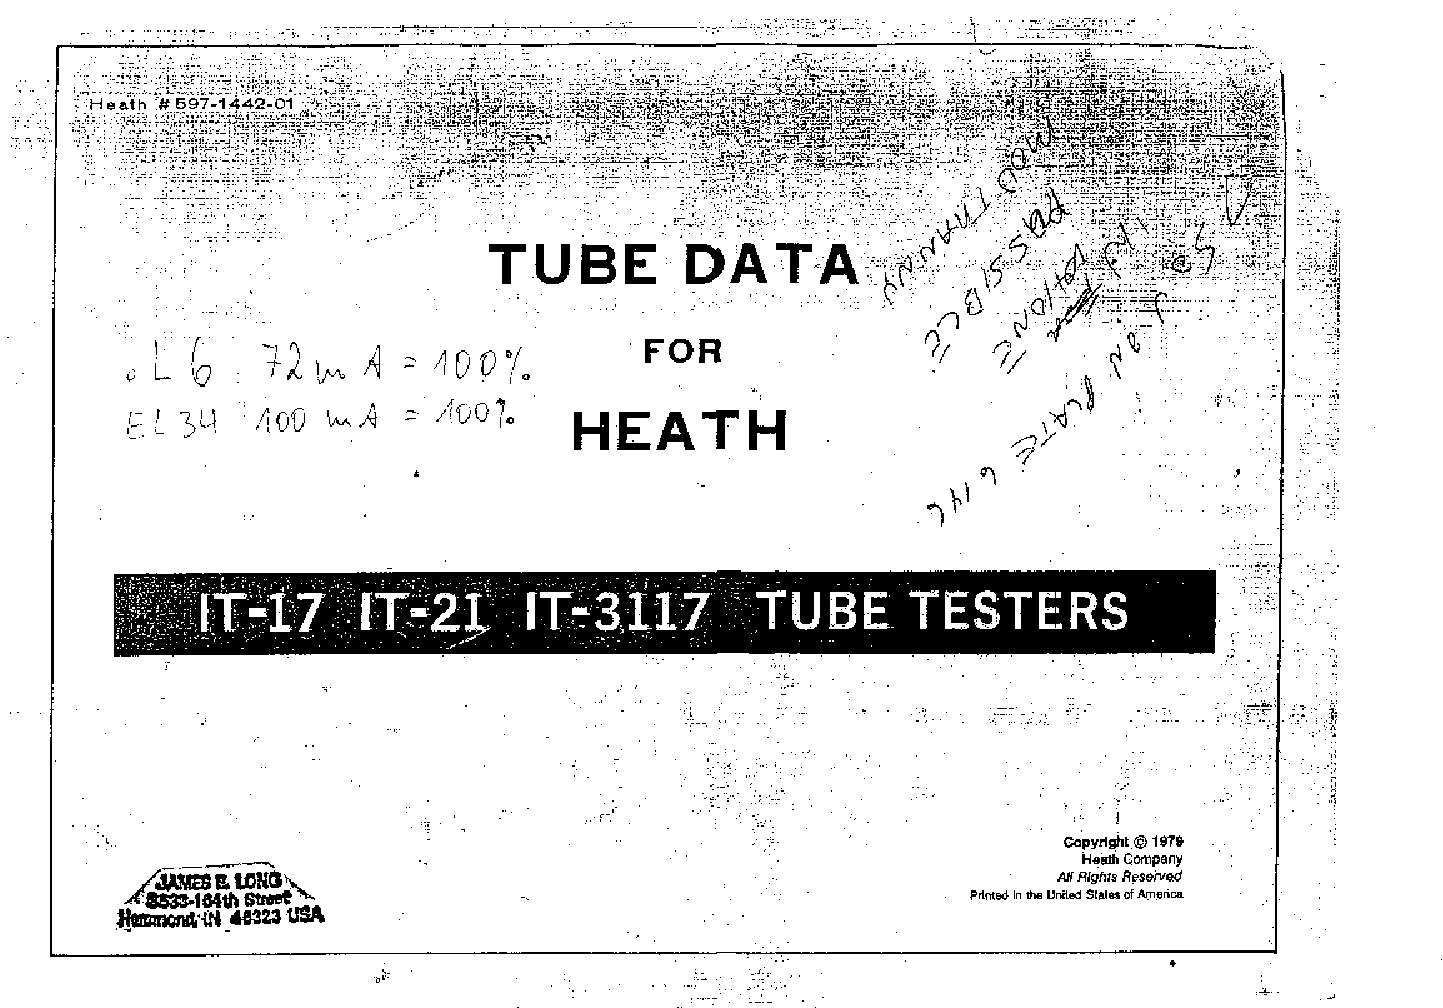 Heathkit it-3117 tube tester